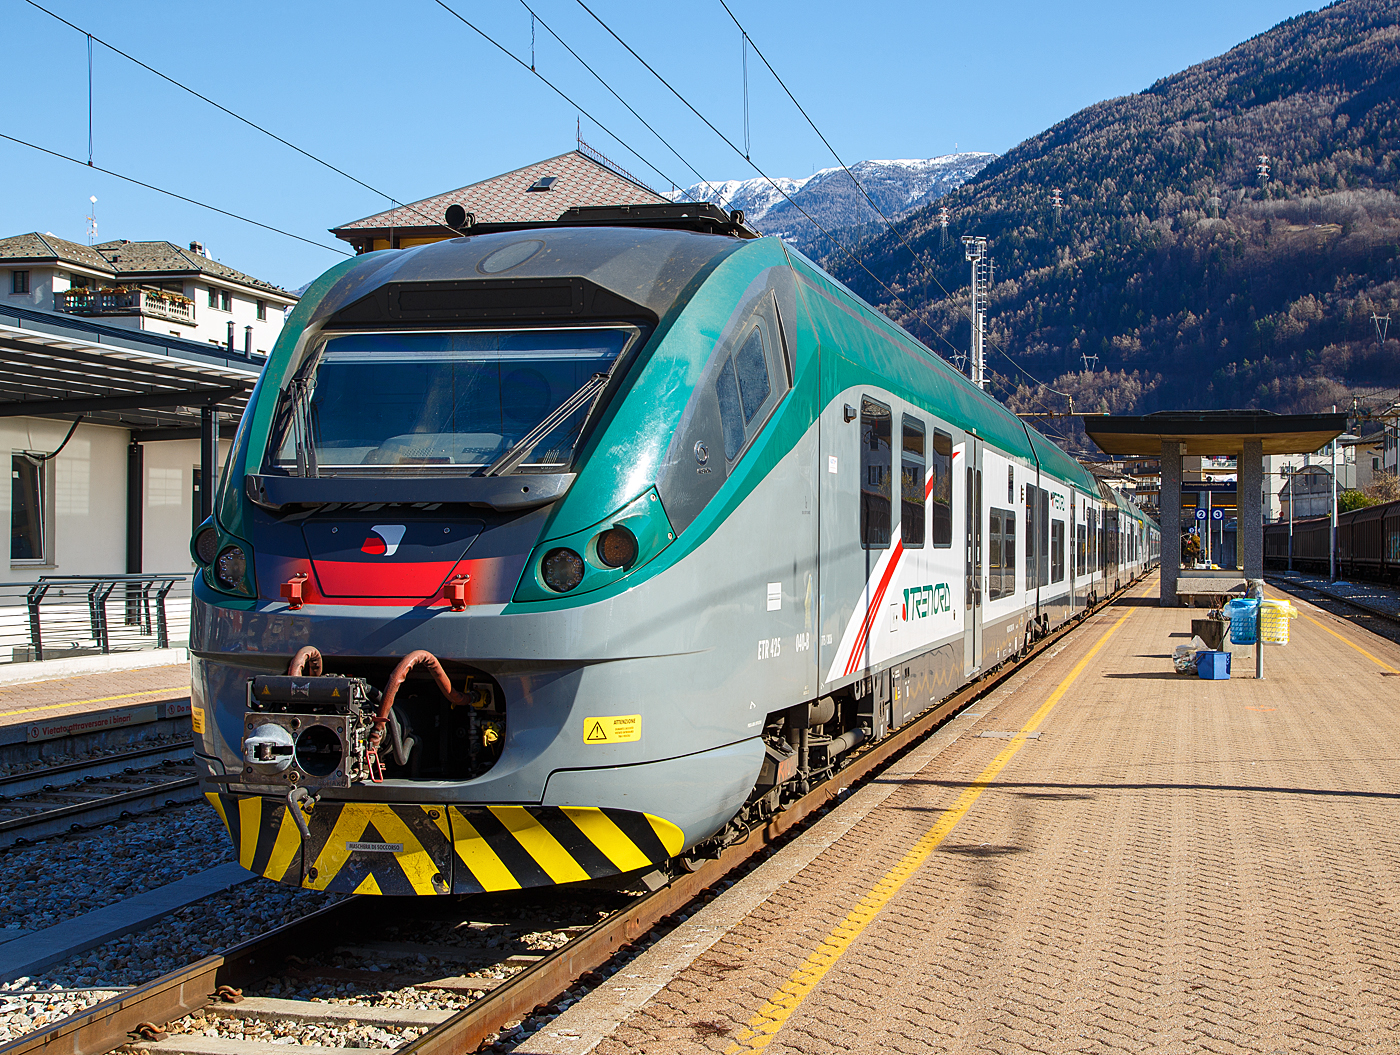 Zwei gekuppelte JAZZ der Trenord, der fünfteilige ETR 425 040 und der sechsteilige ETR 526 008, stehen am 19.02.2017 im FS Bahnhof Tirano.

Die Baureihen ETR.324, ETR.425 und ETR.526 werden bei der italienischen Trenitalia (100-prozentige Tochtergesellschaft der Ferrovie dello Stato Italiane - FS) als „Jazz“ bezeichnet. Diese elektrischen Triebzüge basieren auf der Plattform des Alstom Coradia Meridian. Die Triebzüge kommen bei der Trenitalia und dem Bahnunternehmen Trenord zum Einsatz. Alle Baureihen sind im Wesentlichen baugleich und unterscheiden sich lediglich in ihrer Anzahl an Wagen. Der ETR.324 ist ein vierteiliger, der ETR.425 ist ein fünfteiliger und er ETR.526 ein sechsteiliger Treibzug.

Der Jazz ist Nachfolger des Minuetto (ALe 501-502), einem Nahverkehrstriebzug, der in hoher Stückzahl für die Trenitalia und weitere italienische Eisenbahnverkehrsunternehmen gebaut wurde. Auch die später entwickelte Baureihe ETR.245, die ausschließlich als Malpensa Express eingesetzt wird, ist stark mit dem Jazz verwandt. Die Produktion des Jazz endete im Juli 2019 mit der Auslieferung des 136. Triebzuges für die Trenitalia. Nachfolger ist der Alstom Coradia Stream. Wie die Vorgängerbaureihen wurde der „Jazz“ von Alstom an den Standorten Savigliano, Sesto San Giovanni und Bologna gebaut.

Die Einstiegsbereiche sind niederflurig gehalten und verfügen über einen Mehrzweckbereich für mobilitätseingeschränkte Fahrgäste, Fahrradstellplätze und einem behindertengerechten WC. Alle Außentüren sind mit einer ausfahrbaren Spaltüberbrückung versehen. Der Fahrgastraum ist mit einer Videoüberwachungsanlage ausgestattet, die Fahrgastinformation erfolgt visuell über Monitore, die im Wechsel Fahrtverlauf, nächsten Halt und Livebilder des Innenraums anzeigen. Der Fahrgastraum ist im aktuellen Trenitalia-Farbschema dunkelblau/orange/grau gehalten, die Beleuchtung erfolgt durch LEDs. Alle Sitzplätze verfügen über 230-Volt-Steckdosen..

TECHNISCHE DATEN:
Gebaute Einheiten: 136
Baujahre: 2014–2019
Hersteller: Alstom
Spurweite: 1.435 mm (Normalspur)
Achsfolge: ETR.324 - Bo'2'2'2'Bo' / ETR.425 - Bo'2'2'2'2'Bo' / ETR.526 - Bo'2'2'2'2'2'Bo'
Länge über Puffer: 67,6 m (ETR.324) / 82,2 m (ETR.425) / 96,9 m (ETR.526)
Höchstgeschwindigkeit: 160 km
Beschleunigung: 0,85 m/s² (3 kV) / 0,81 m/s² (1,5 kV)
Stromsystem: 1,5 kV DC und 3 kV DC 